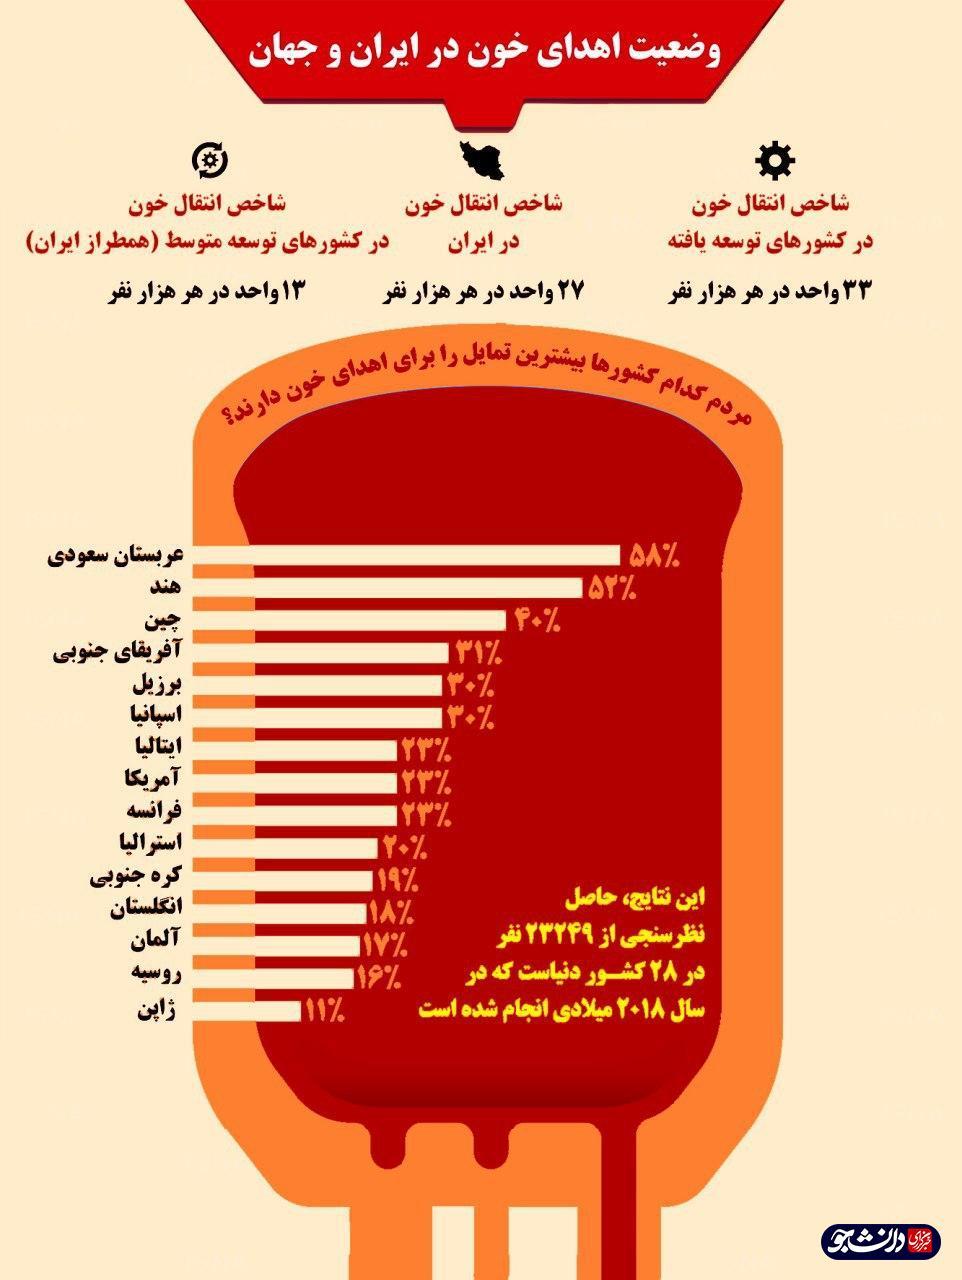 اینفوگرافی وضعیت اهدای خون در ایران و جهان